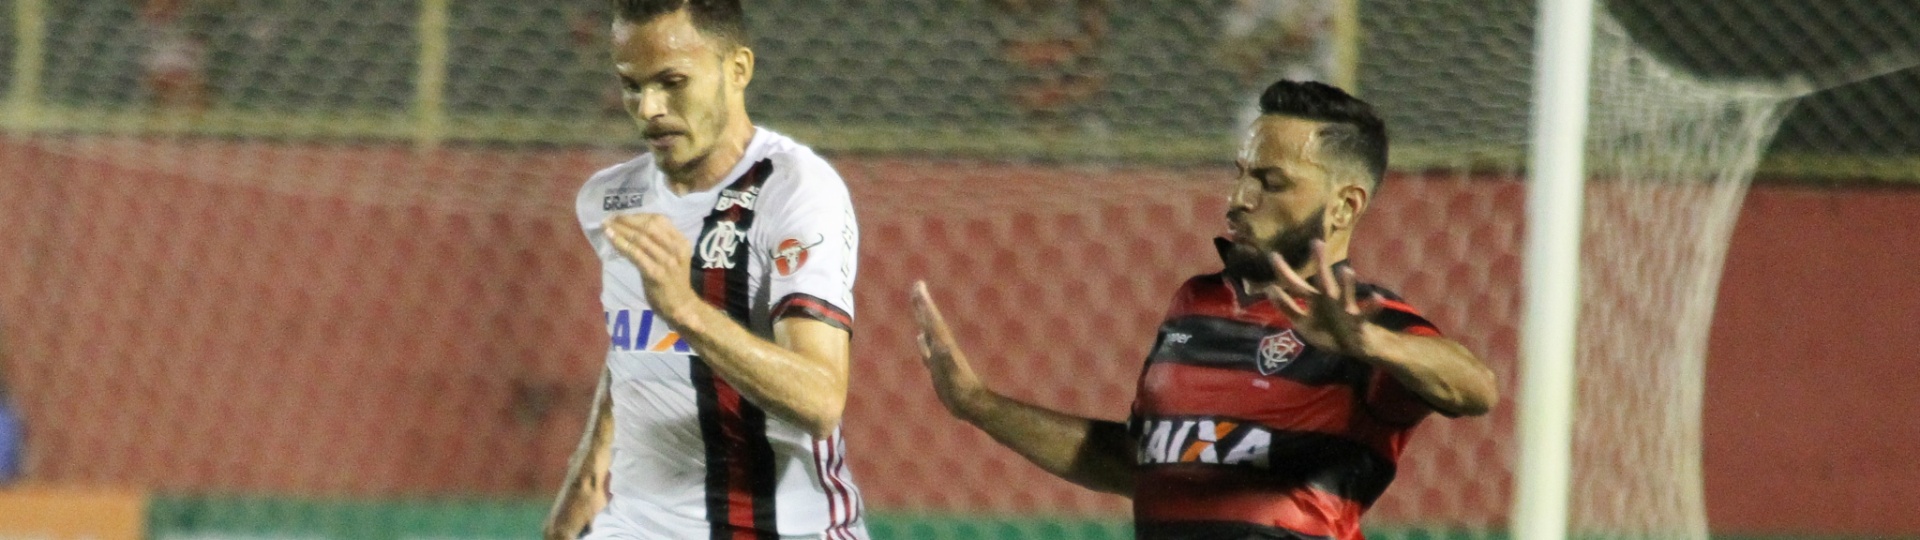 Renê, do Flamengo,e Yago, do Vitória, disputam a bola durante partida pelo Brasileirão